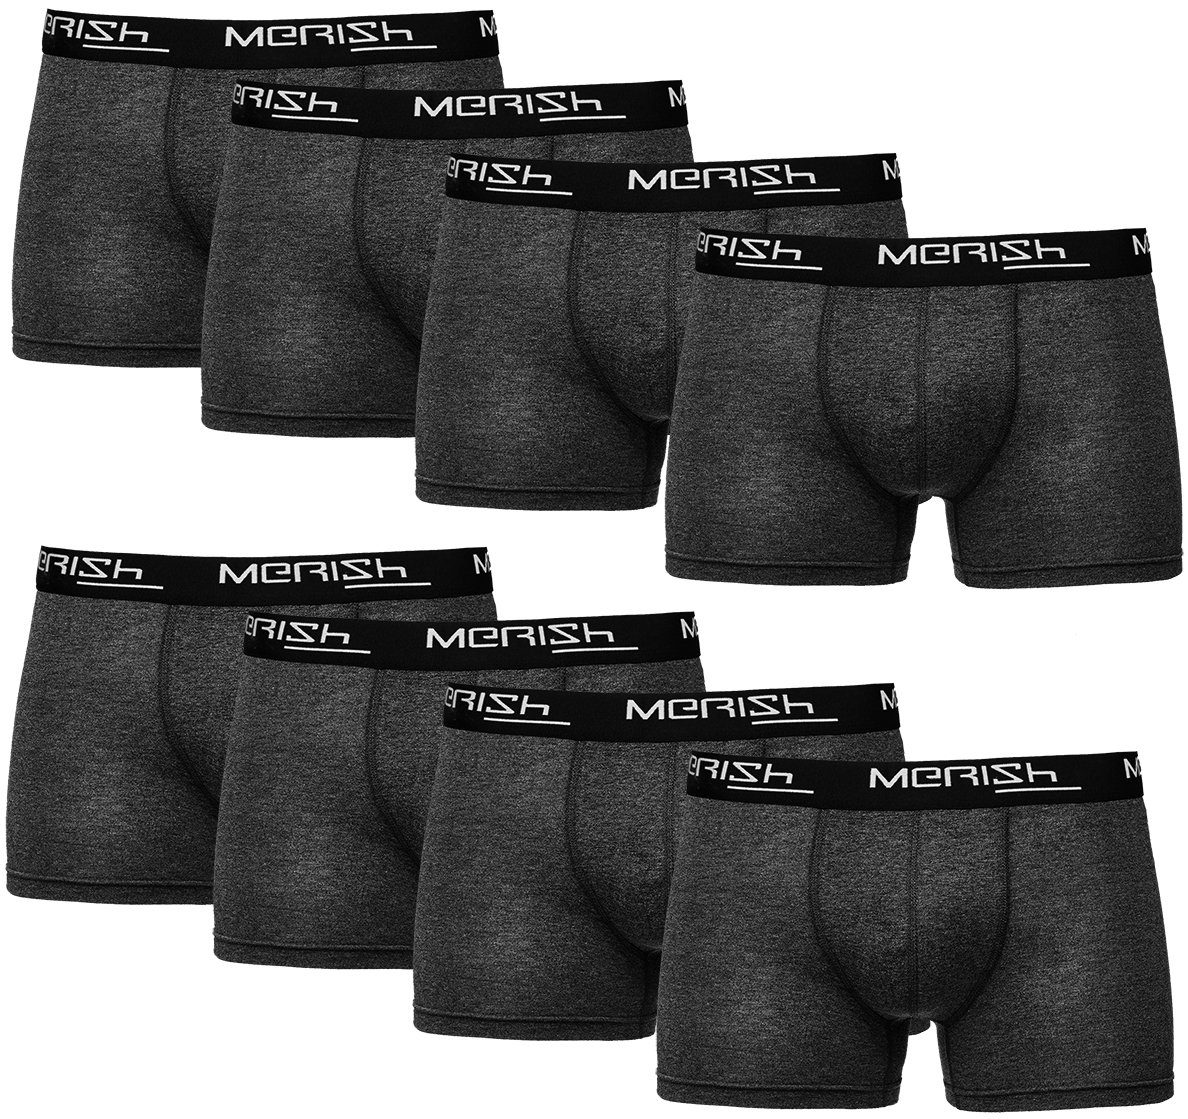 MERISH Boxershorts Herren Männer Unterhosen Baumwolle Premium Qualität perfekte Passform (Vorteilspack, 8er-Pack) S - 7XL 216g-anthrazit | Boxershorts